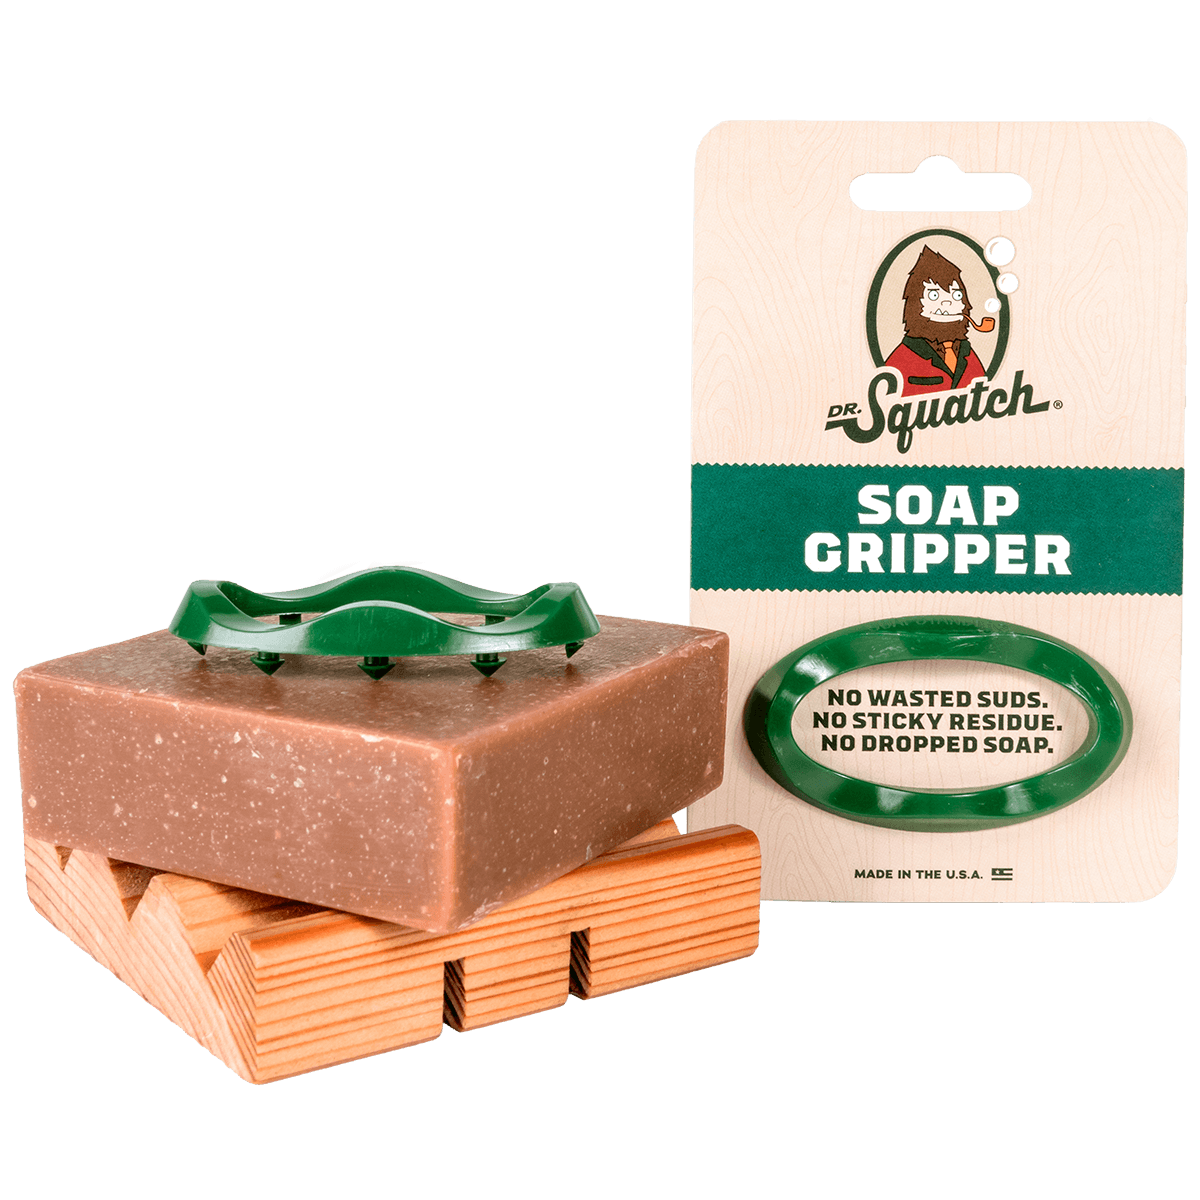 Don't Drop The Soap 👉, 🌲 Introducing the Squatch Soap Gripper! 🌲 🖐️  Enhances grip ✨ Reduces soap scum 🔶 Helps bars last longer Never drop your  soap again!, By Dr. Squatch